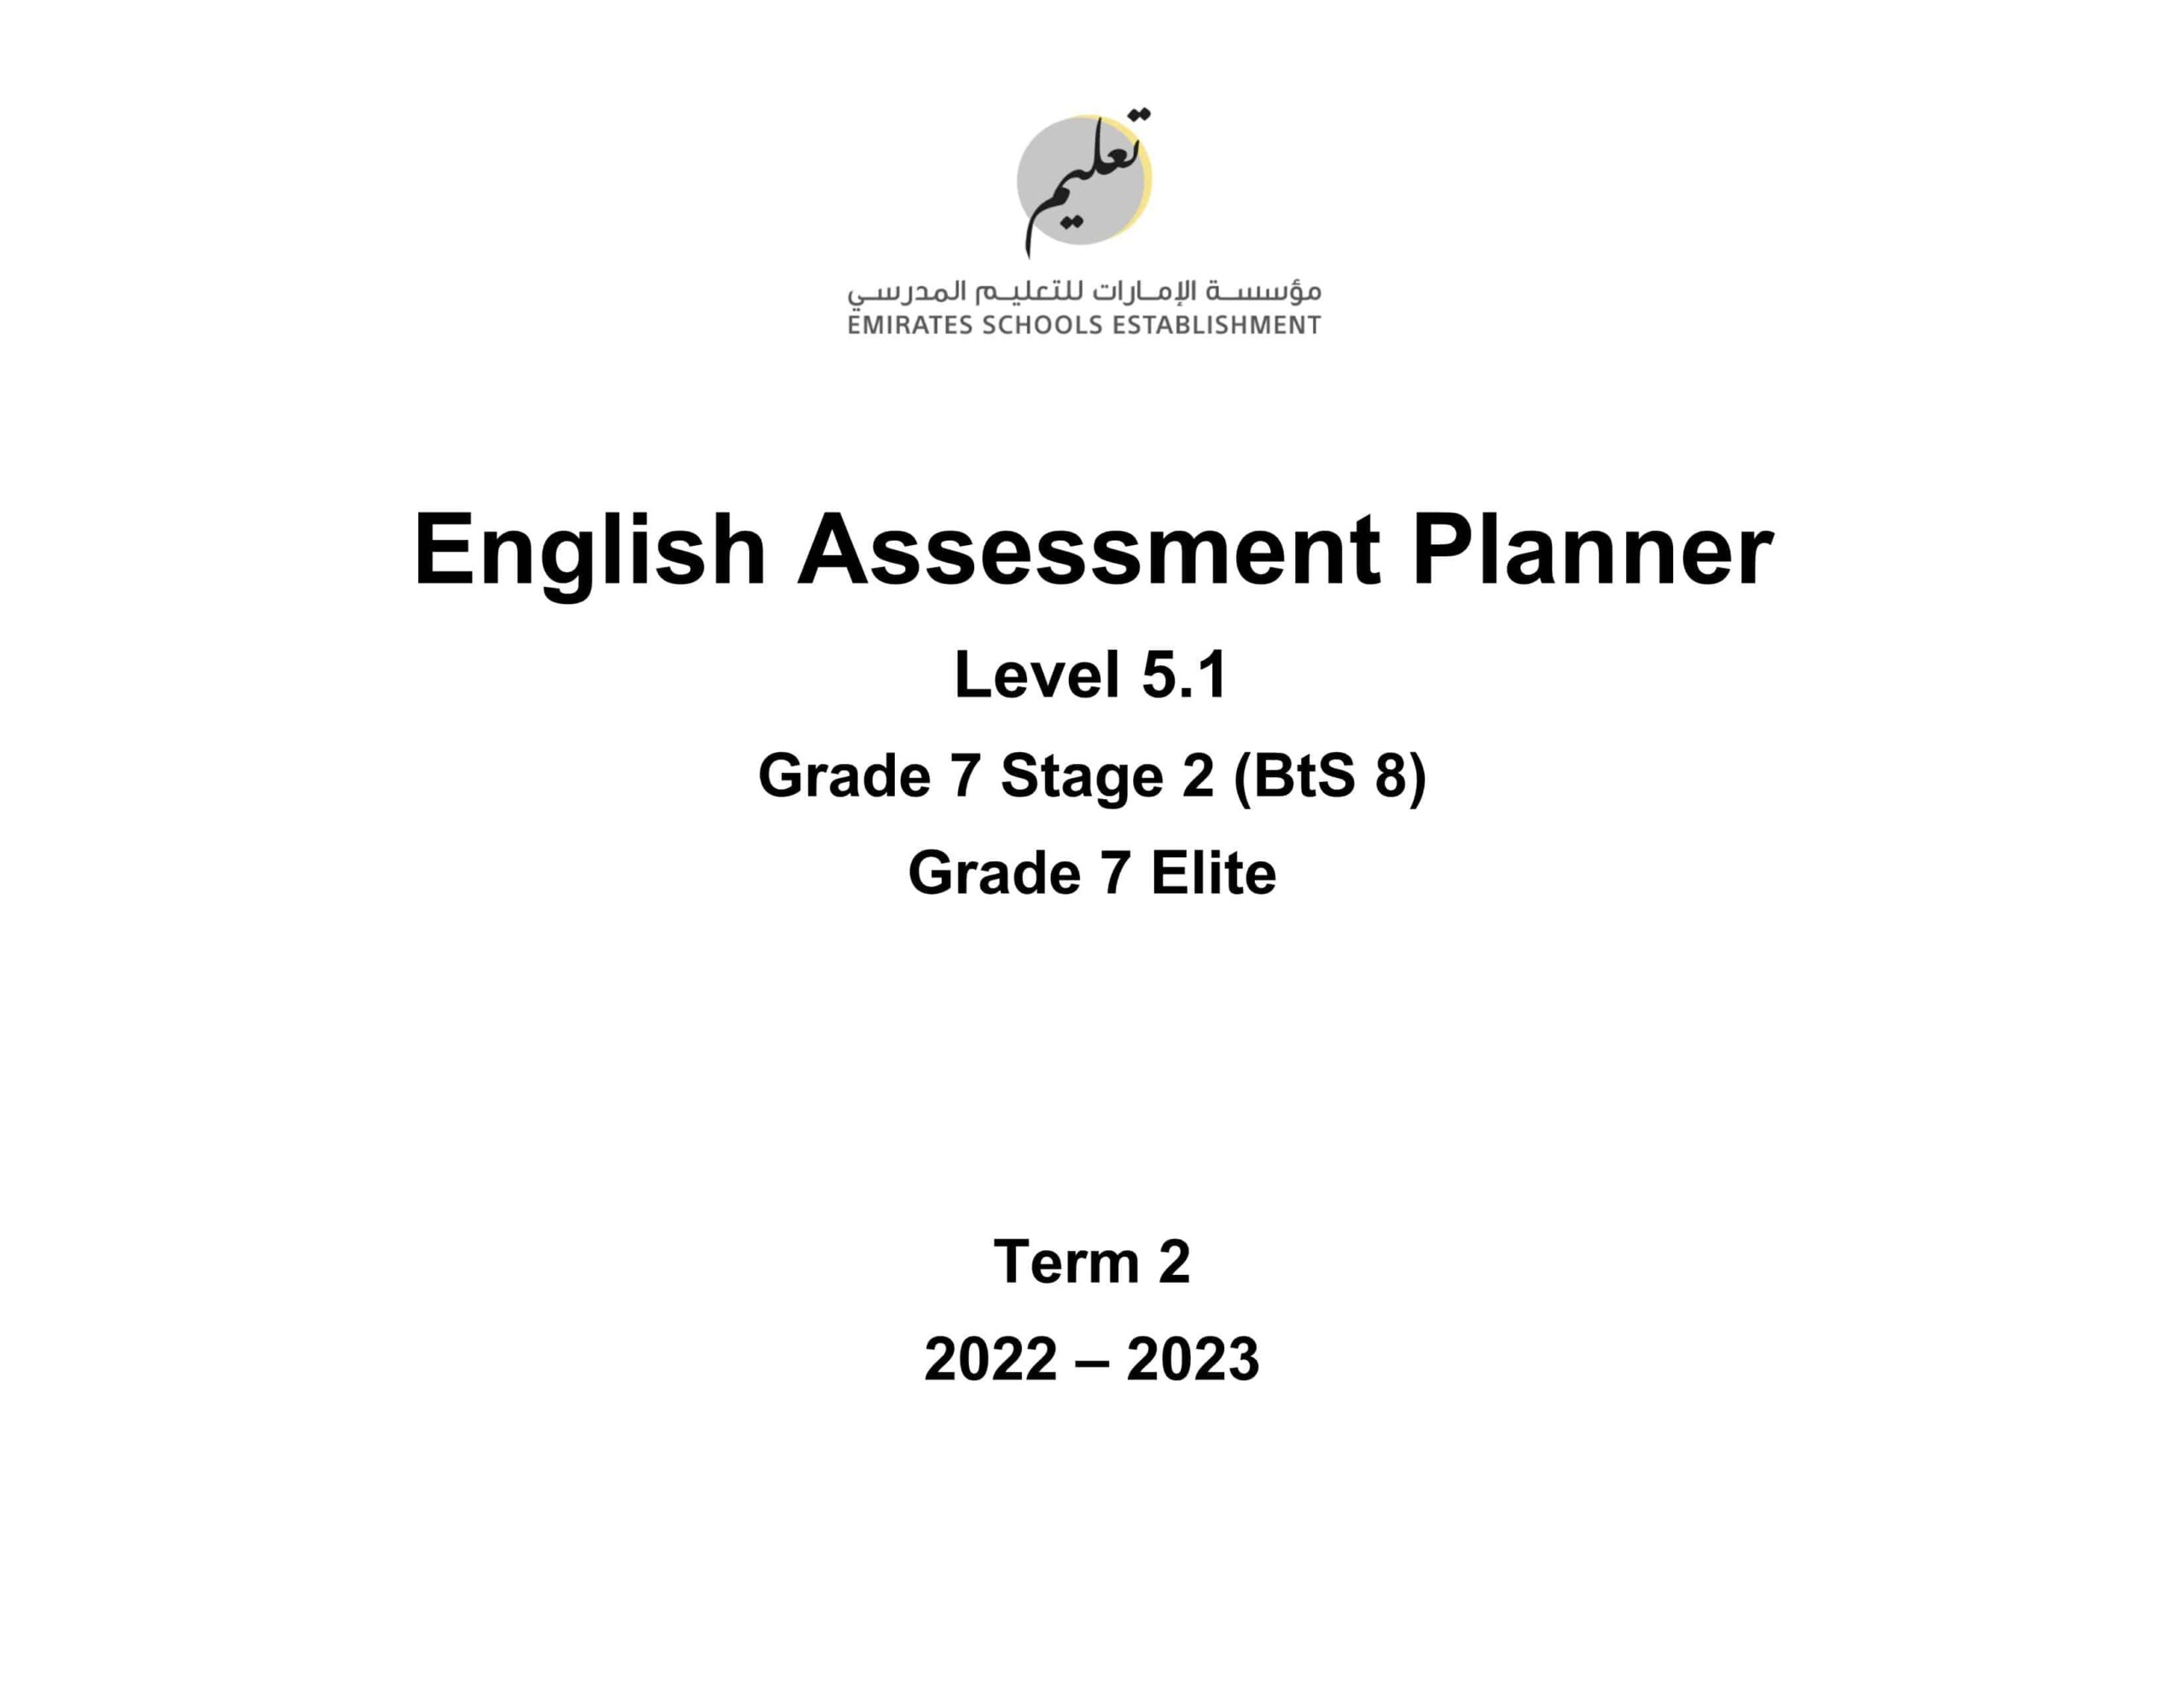 مواصفات الامتحان النهائي Level 3.1 اللغة الإنجليزية الصف السابع Elite وStage 2 BtS 8 الفصل الدراسي الثاني 2022-2023